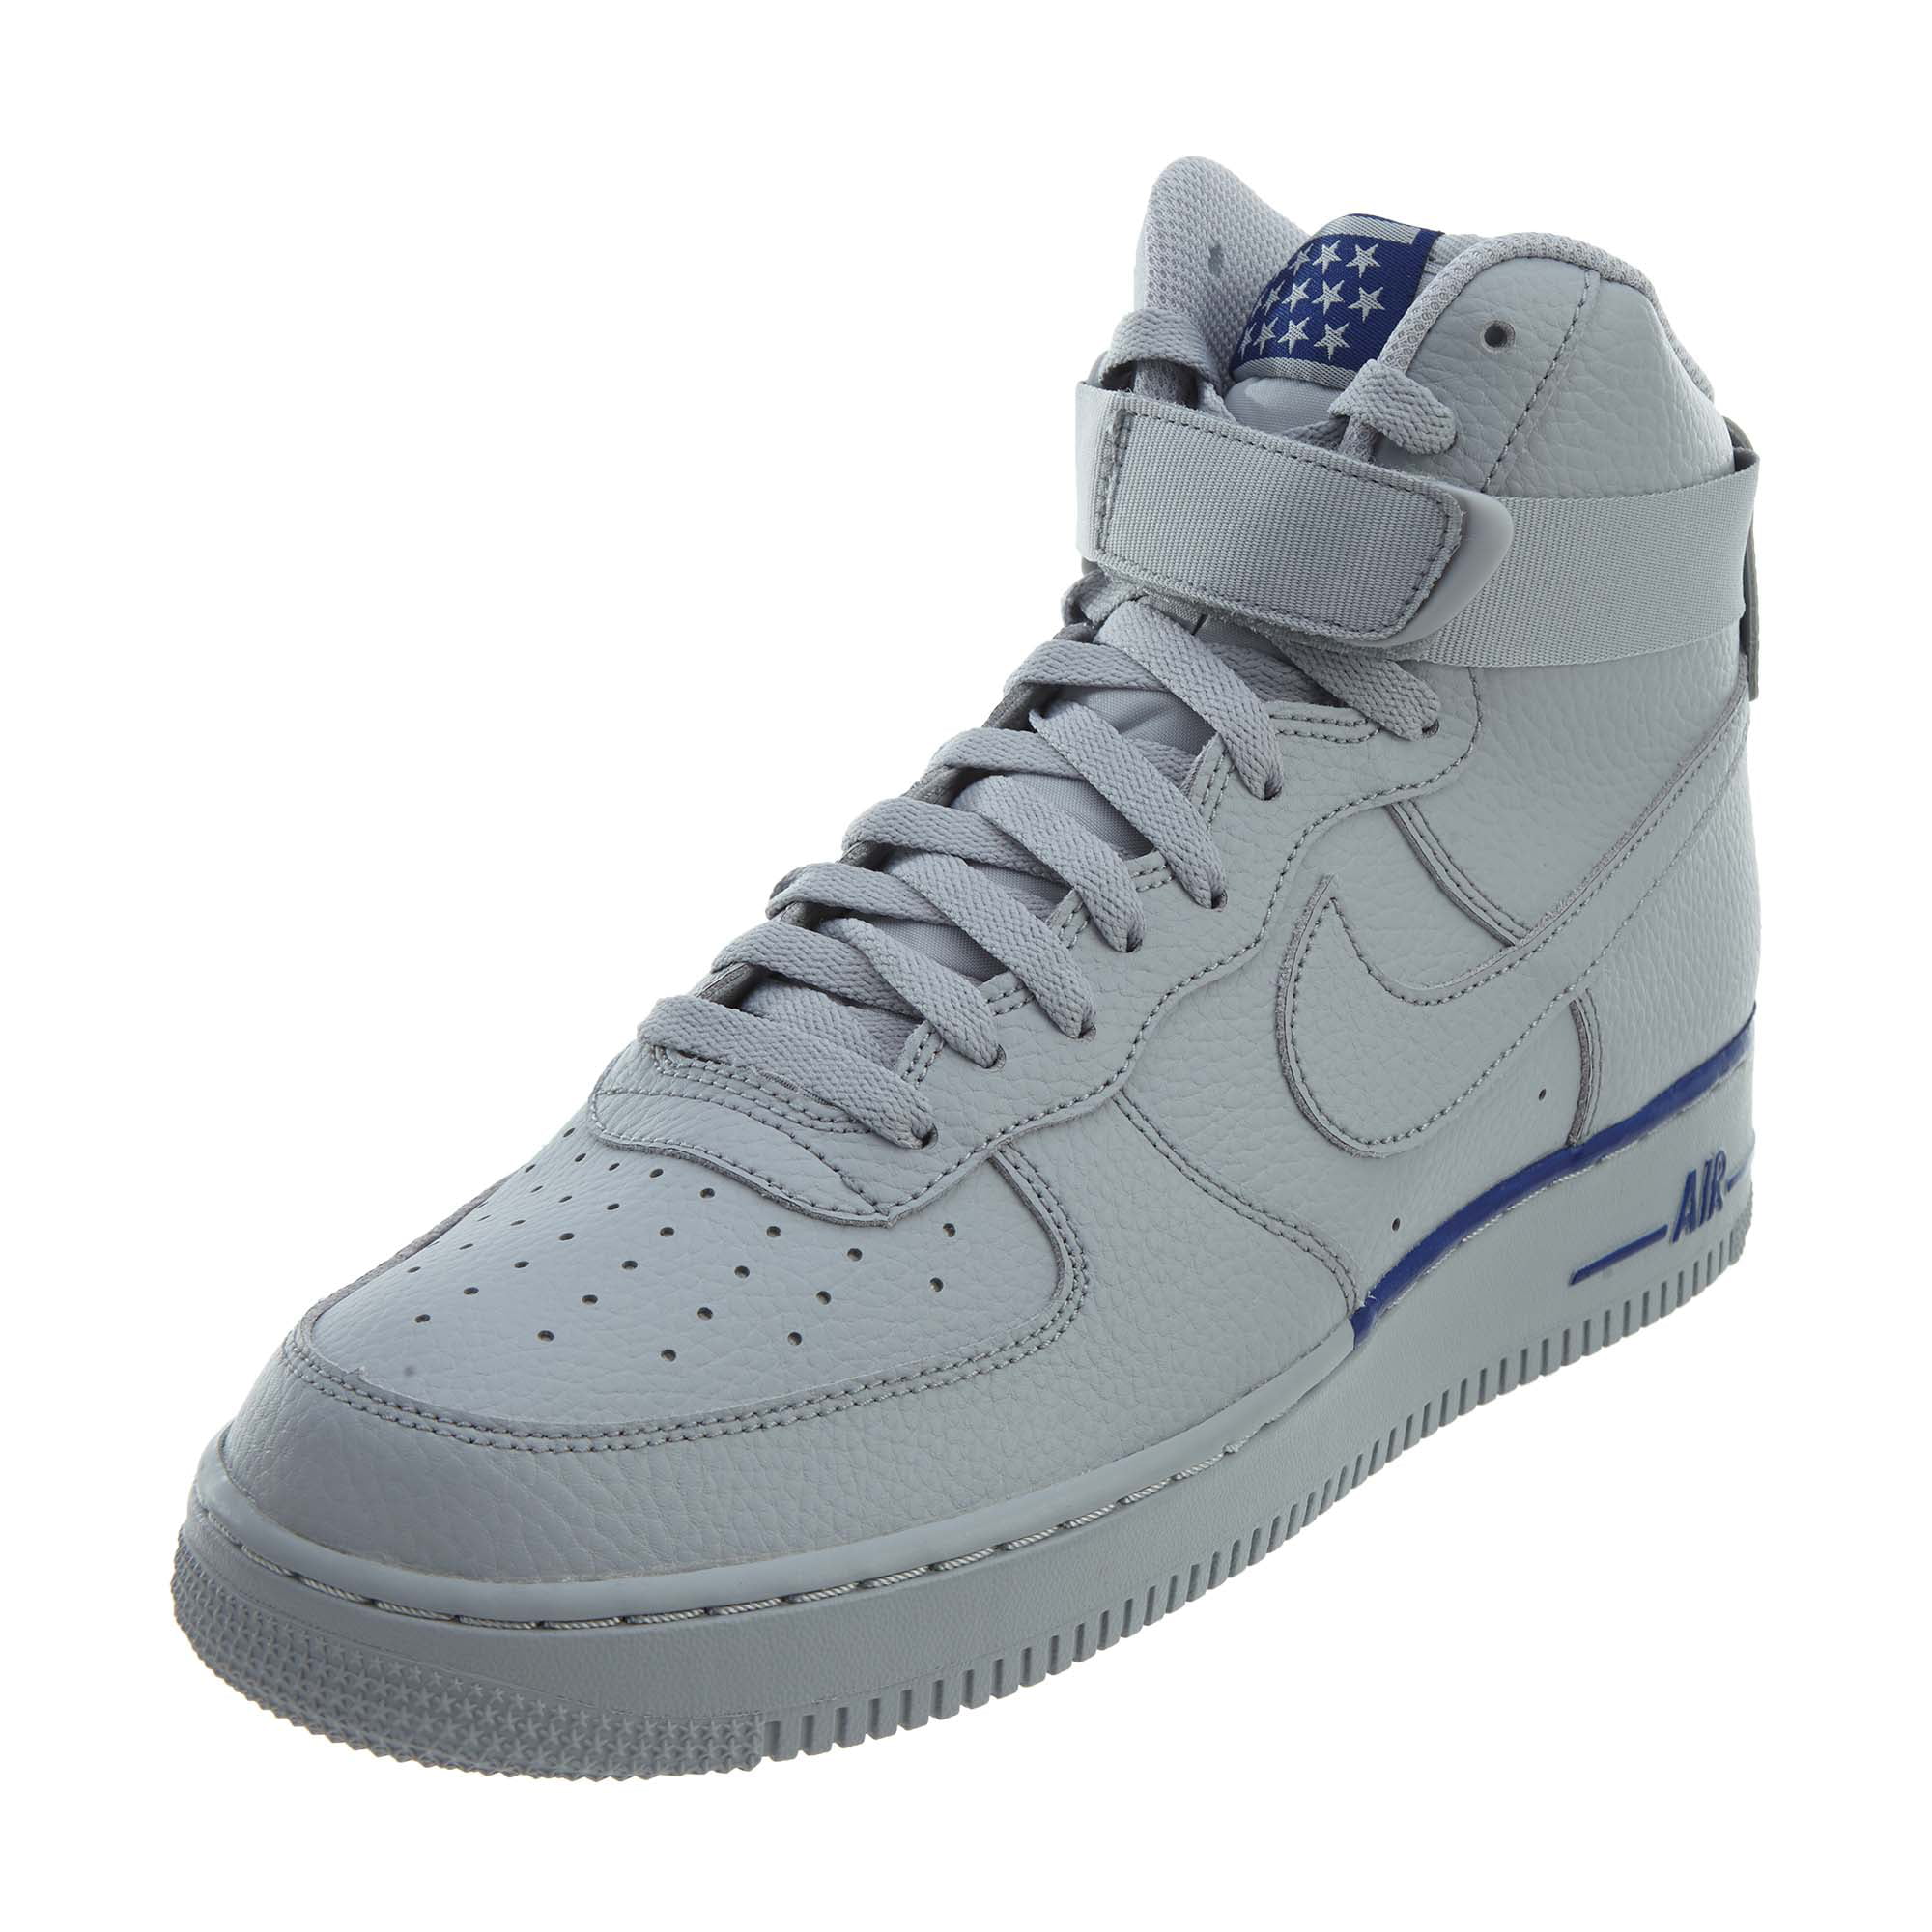 Nike - Nike Air Force 1 High '07 Mens Style : 315121 - Walmart.com ...